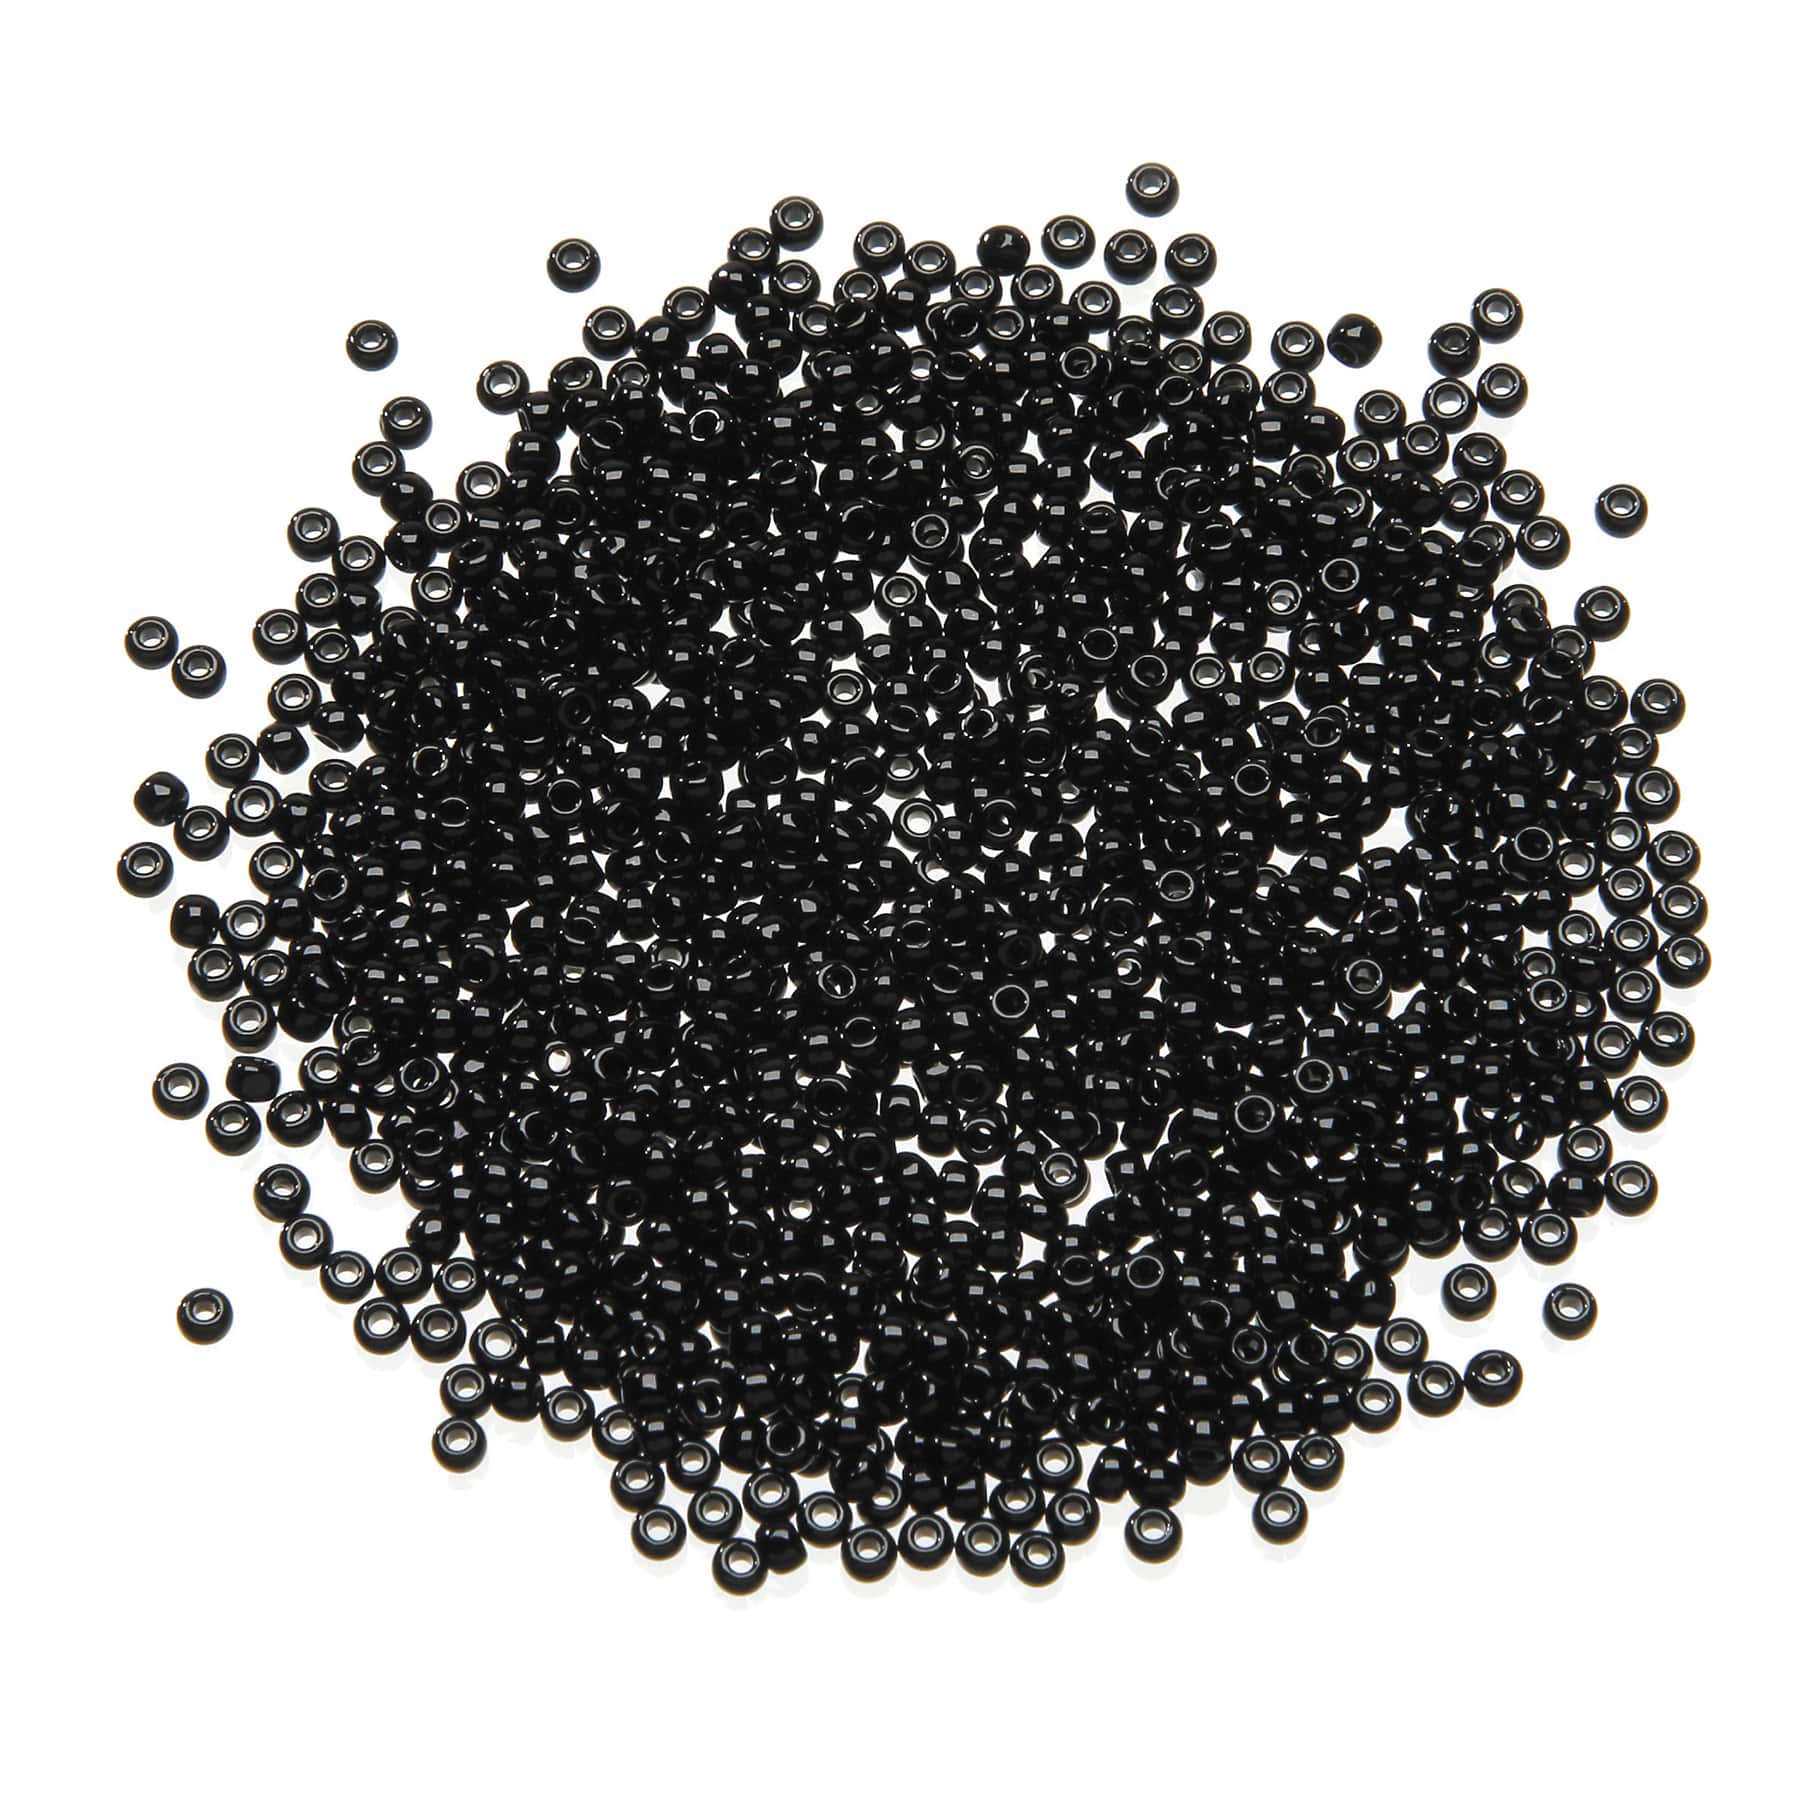 Toho Japanese Glass Seed Beads - Black Opaque - 11/0 2.2mm